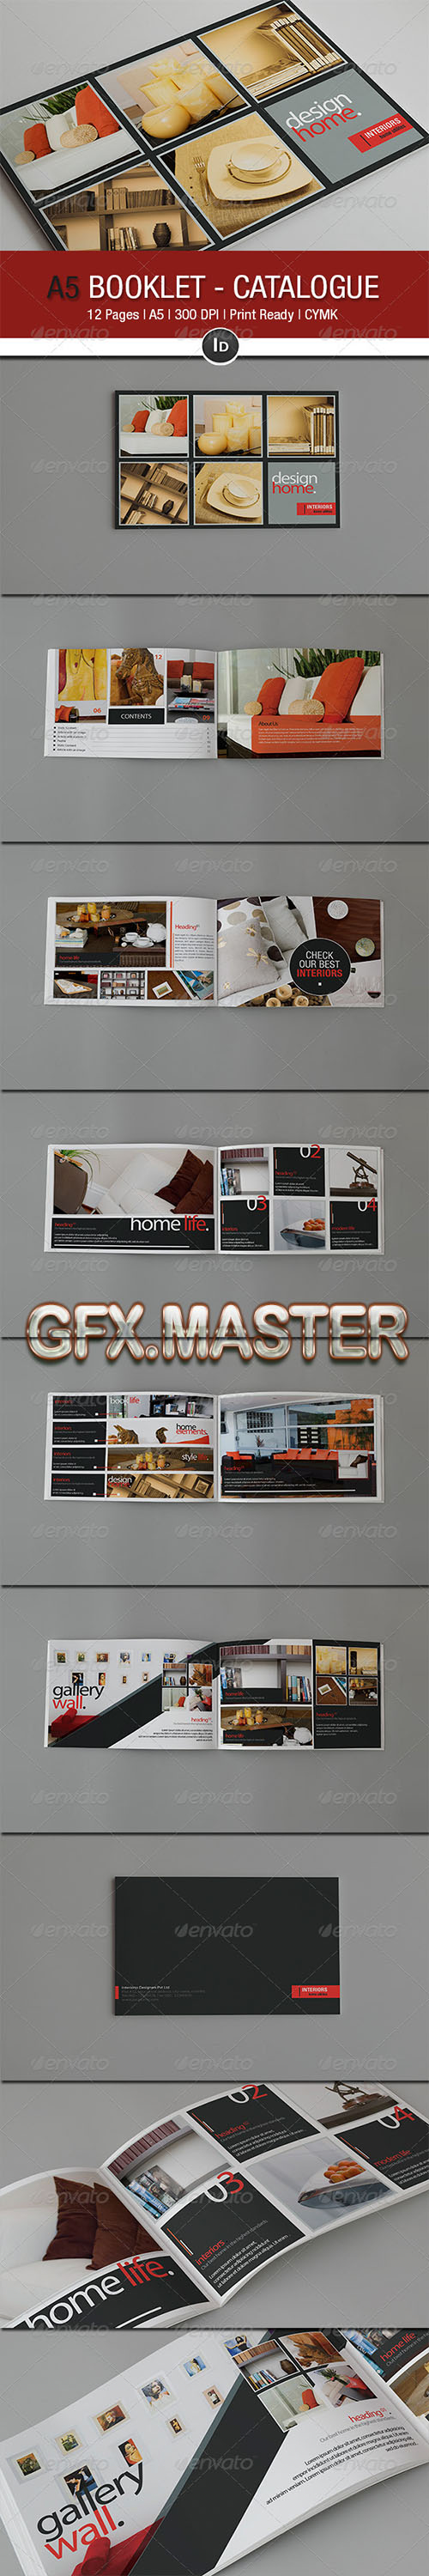 GraphicRiver - A5 Booklet - Catalogue V 2.0